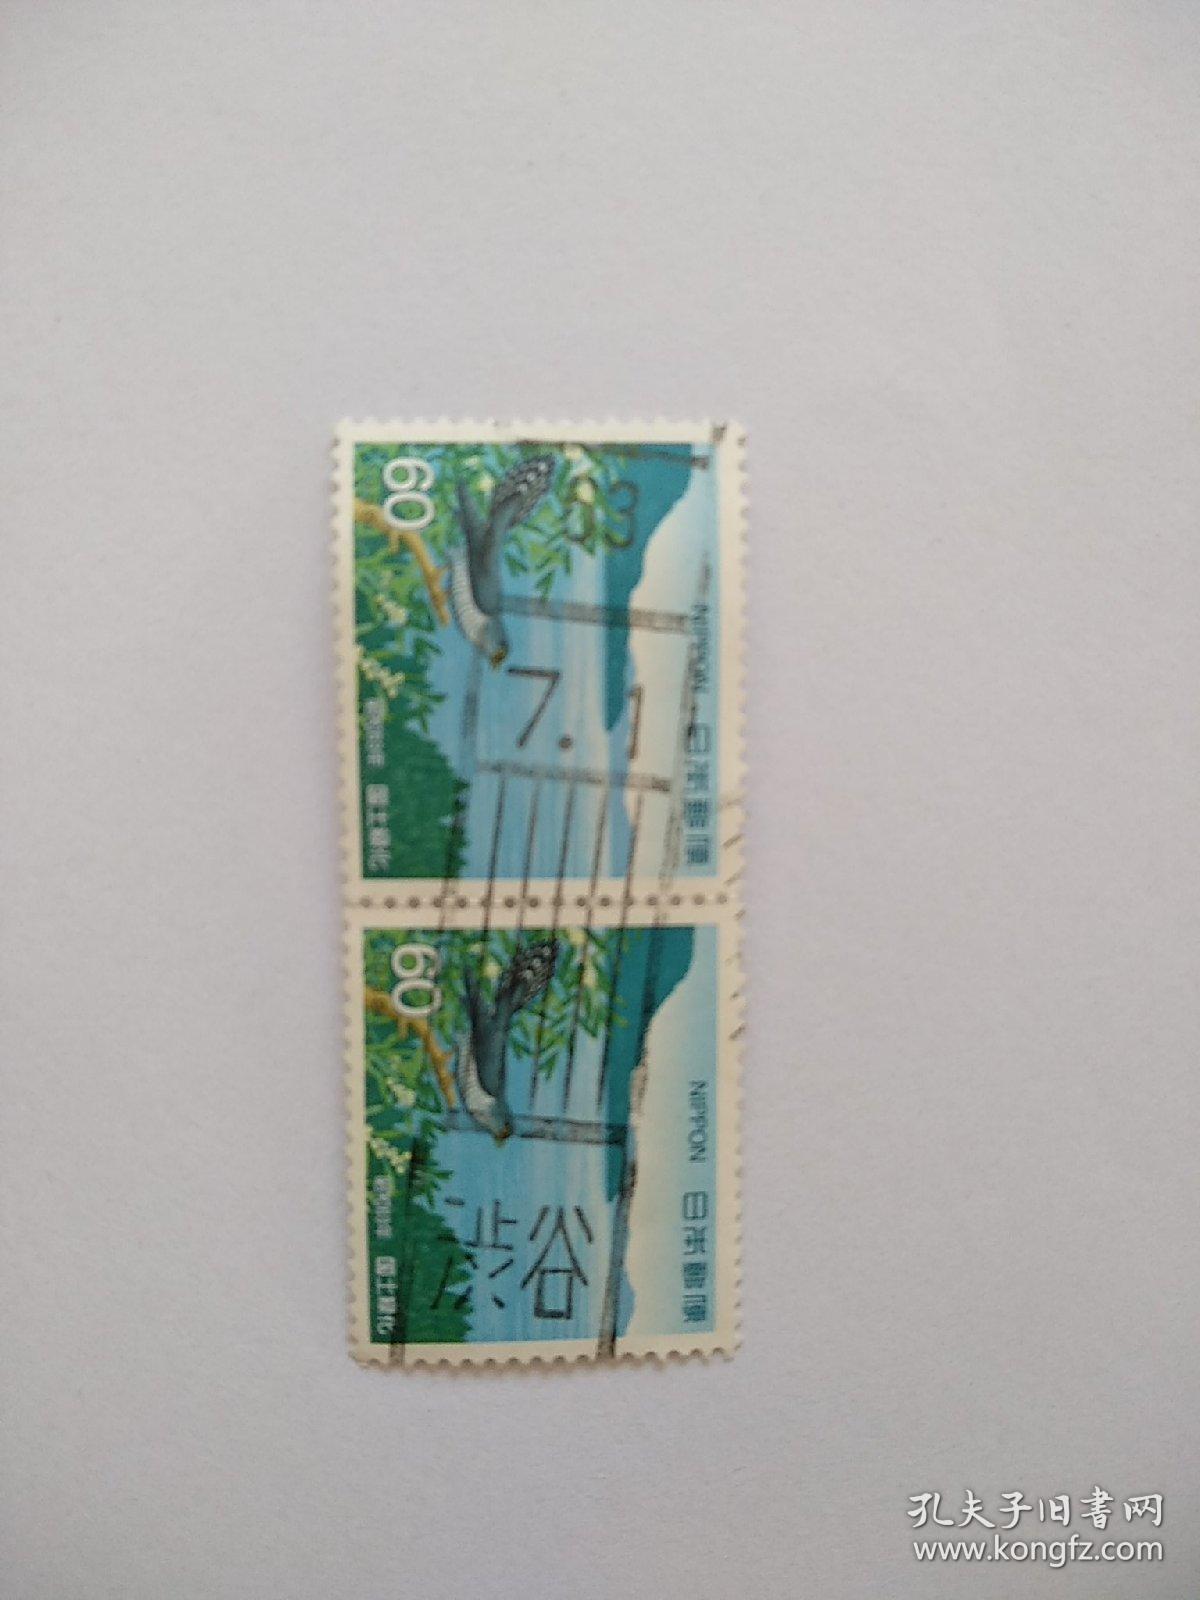 日邮·日本邮票信销·樱花目录编号C1225 国土绿化系列-1988年 国土绿化--小杜鹃和屋岛风光 两枚连票销“涉谷”昭和63年7月1日条形戳一枚（邮票发行日期5.20日）